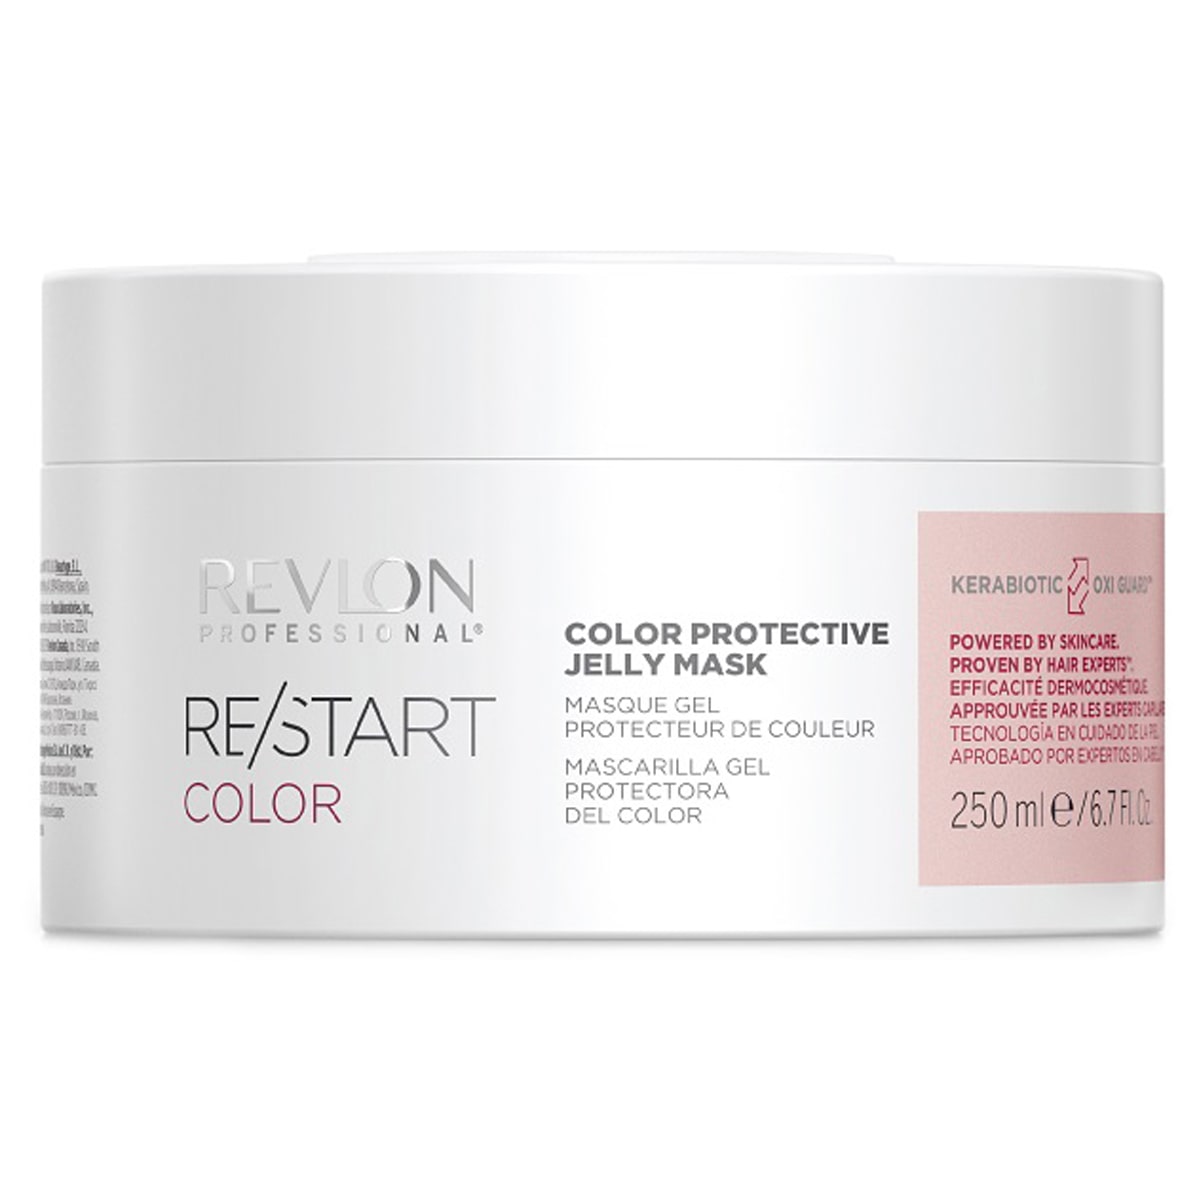 Revlon Professional Защитная гель-маска для окрашенных волос, 250 мл (Revlon Professional, Restart) цена и фото